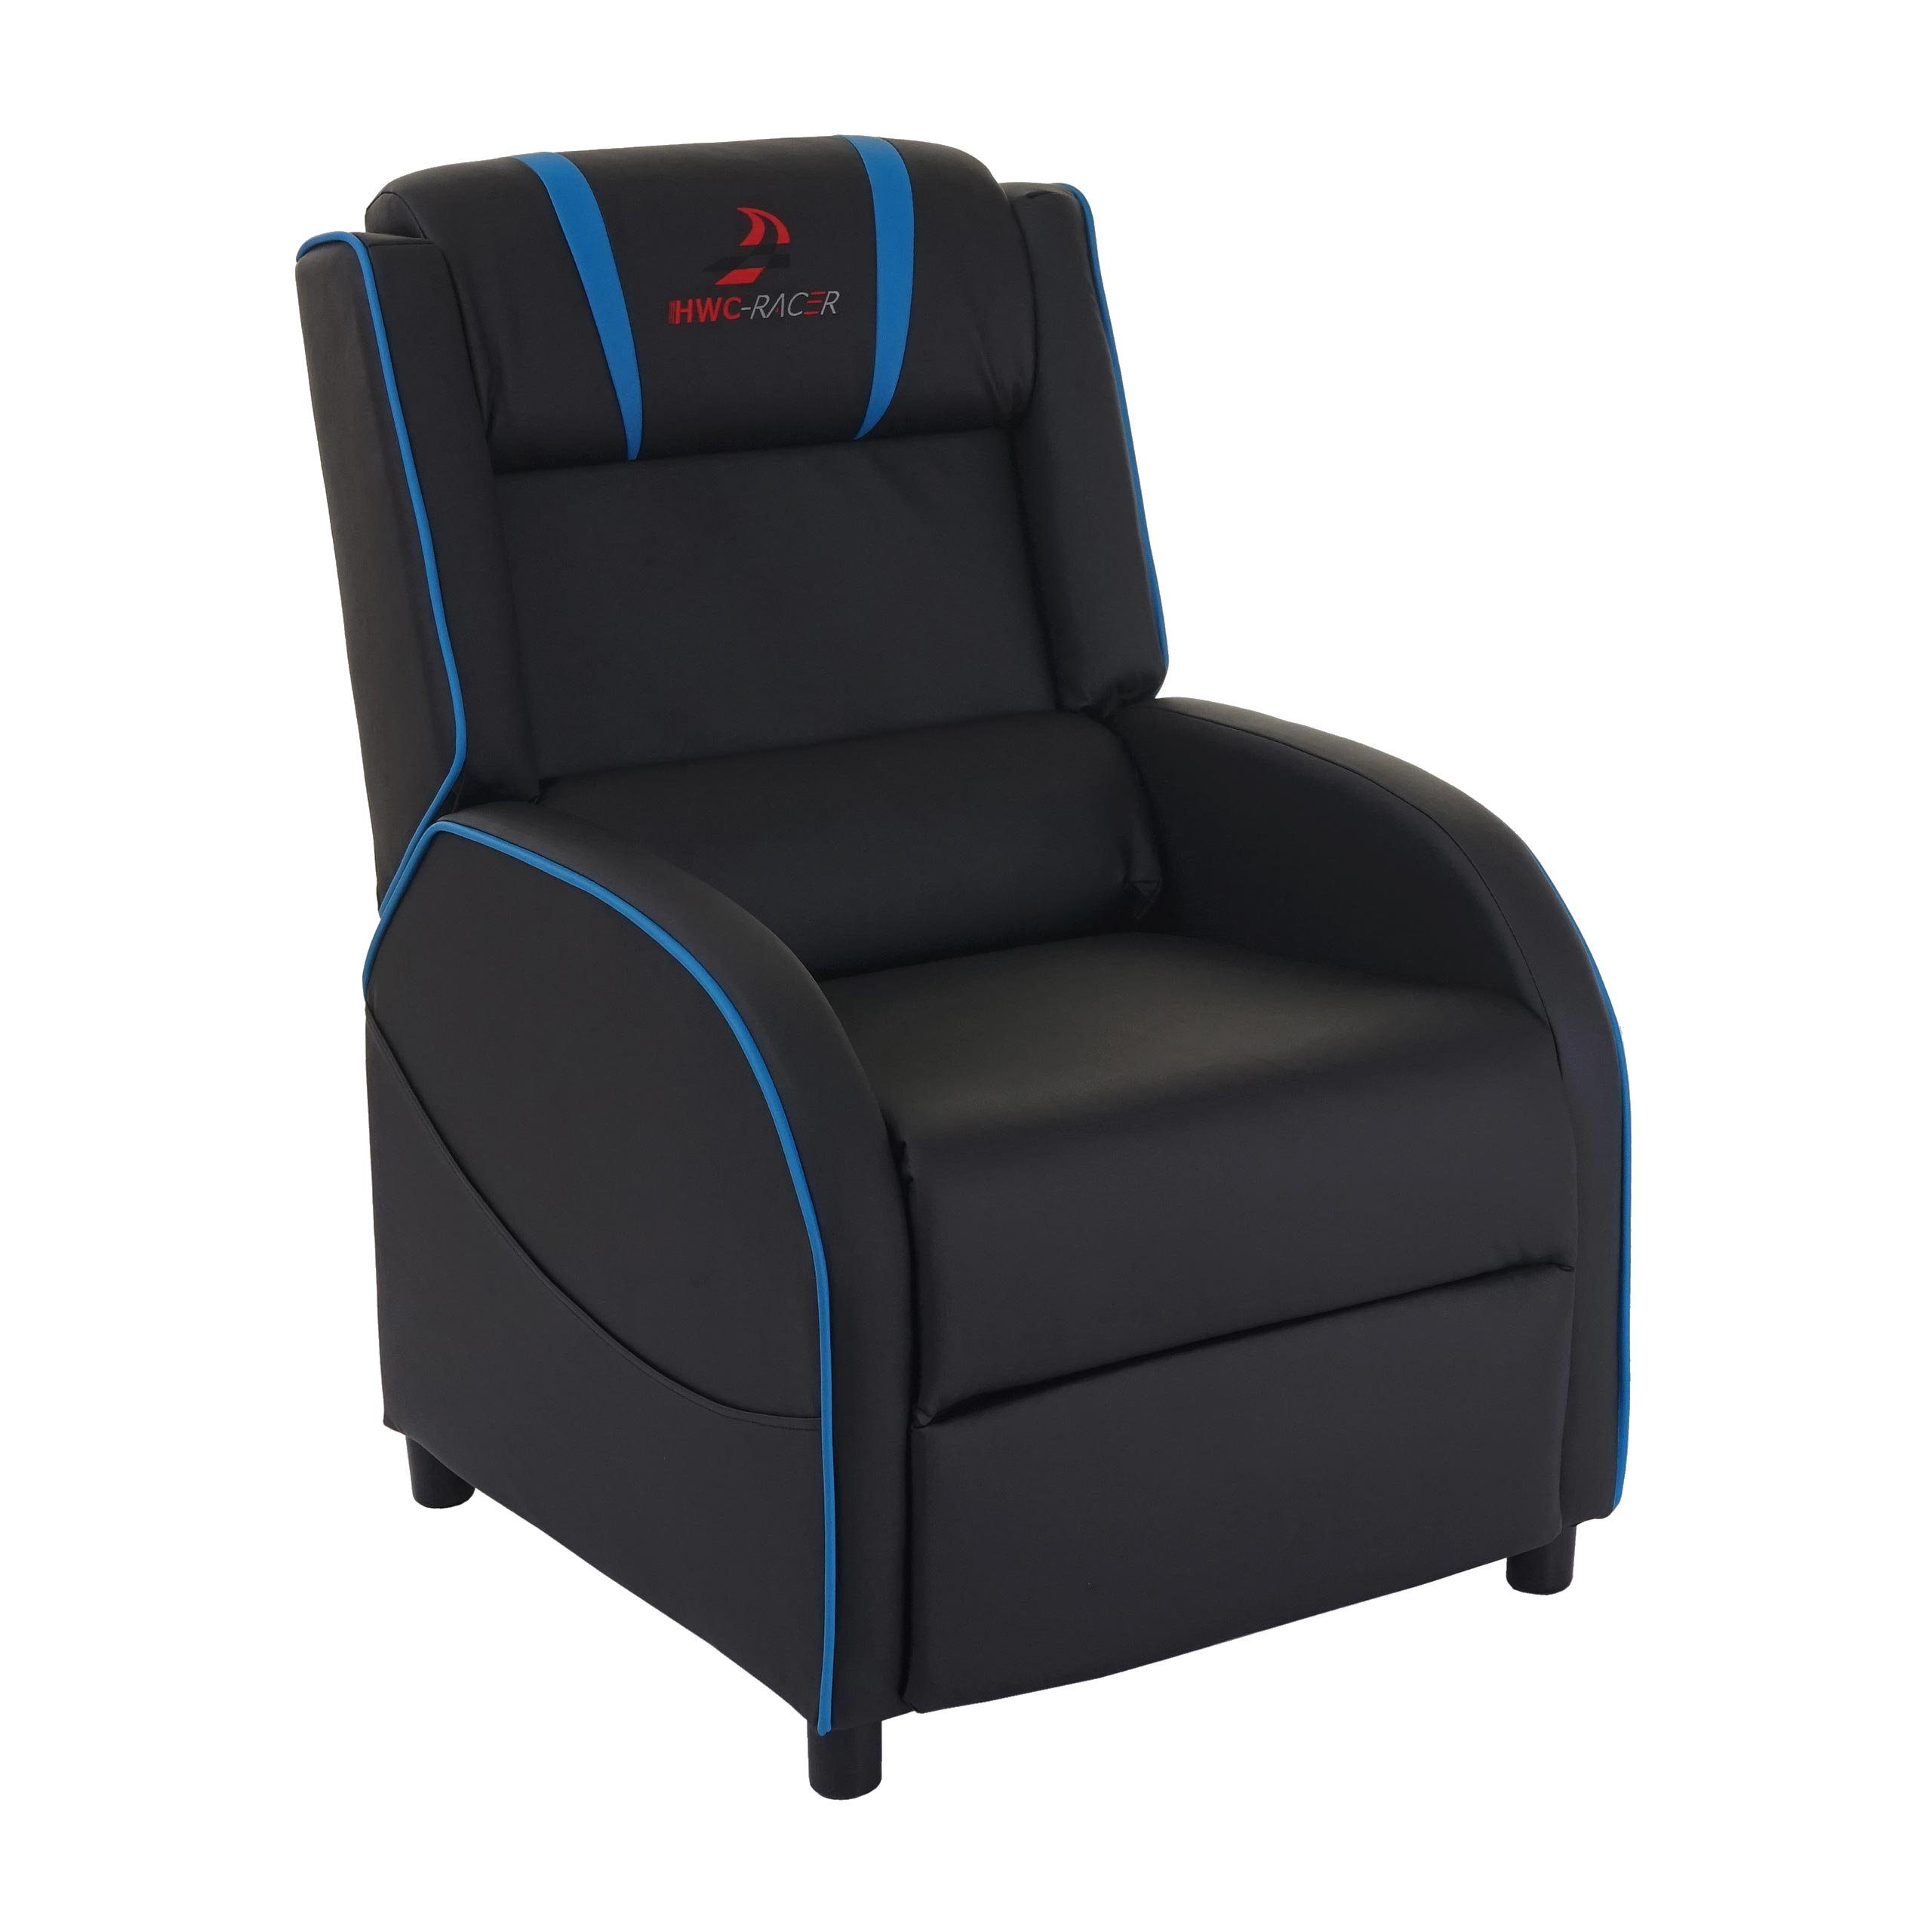 MCW Relaxsessel MCW-D68, Synchrone Verstellung, Sitz- oder Liegeposition möglich, inkl. Taschen schwarz-blau